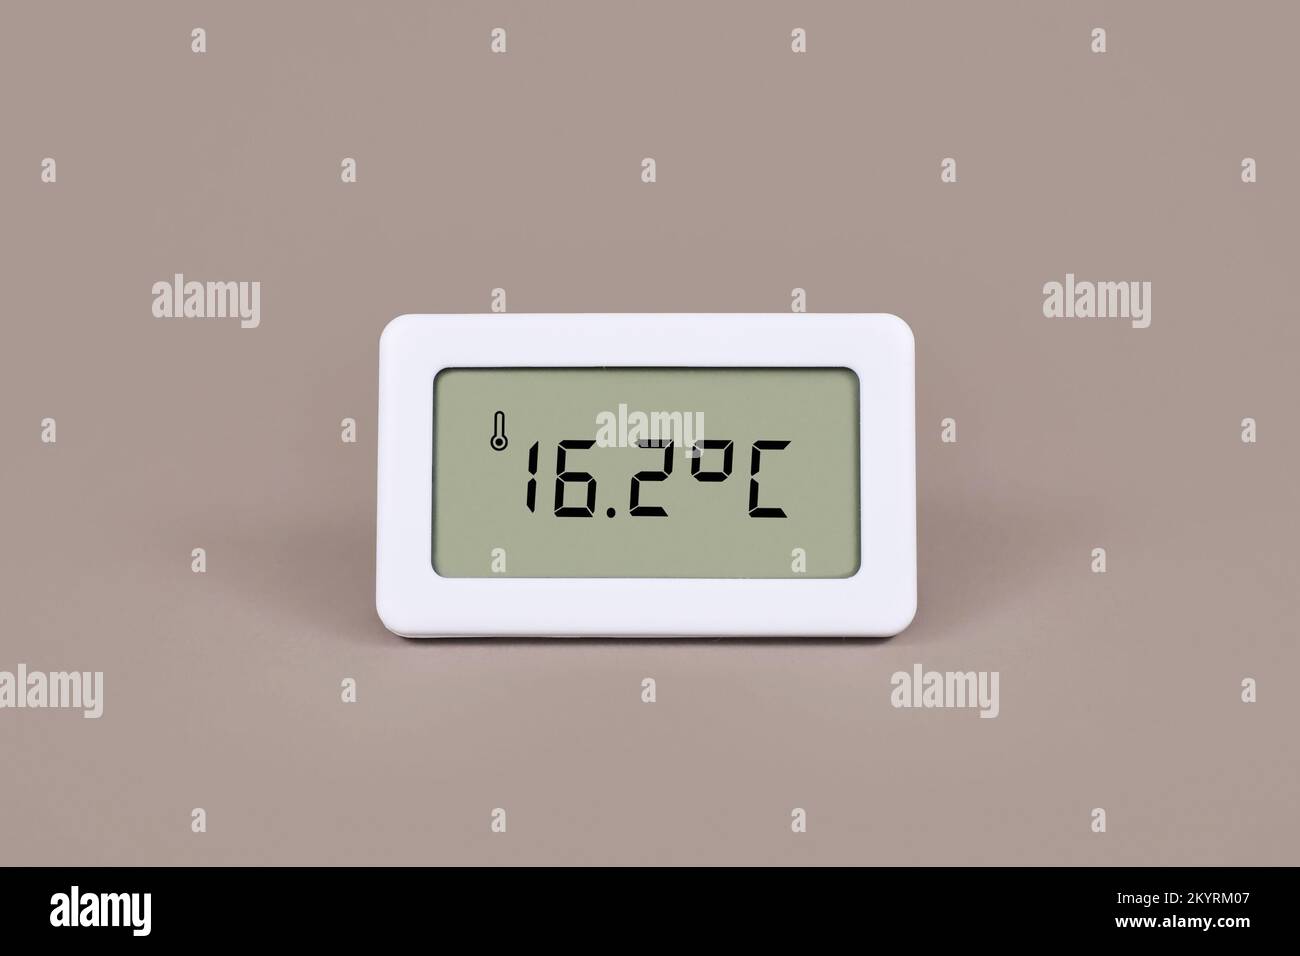 Thermomètre numérique indiquant une température de 16,7 degrés Celsius dans la chambre froide Banque D'Images